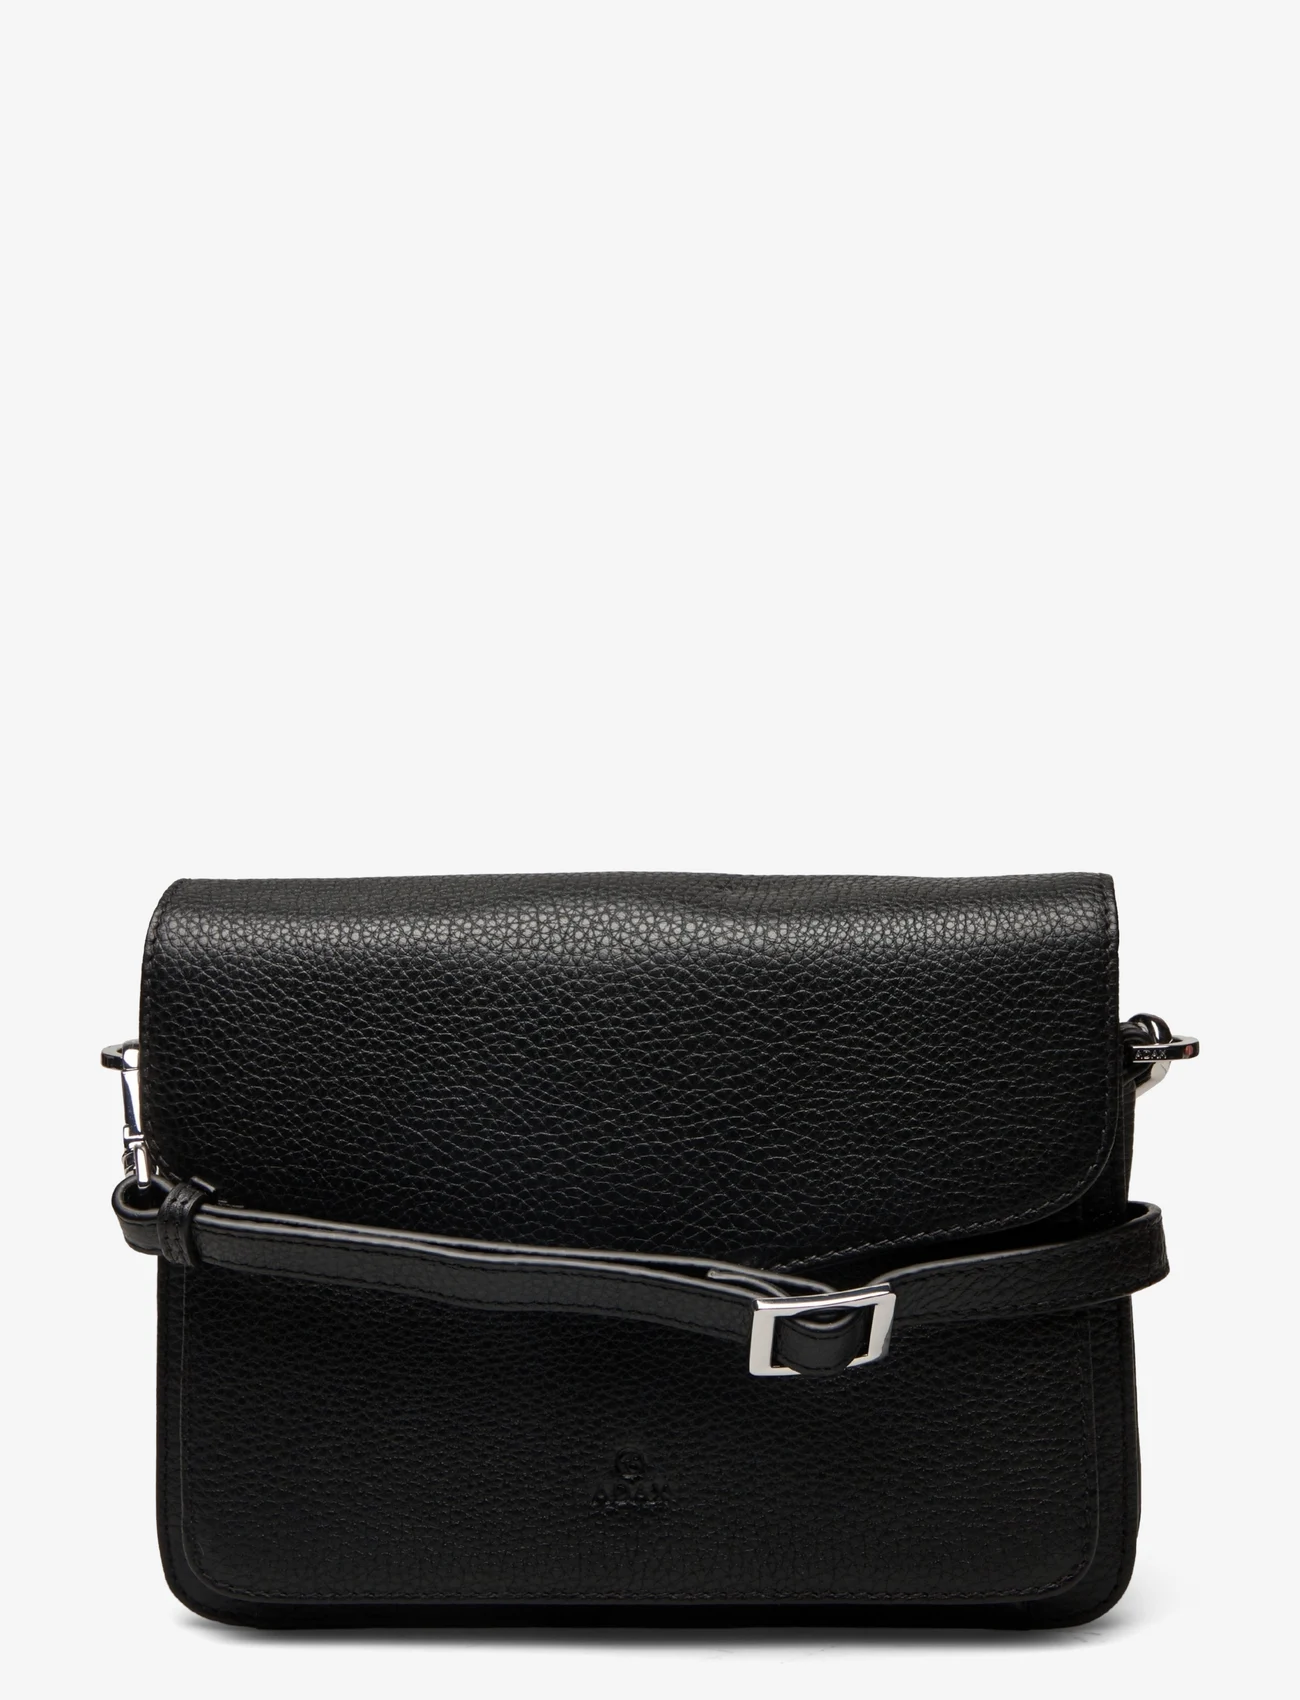 Adax - Cormorano shoulder bag Zafira - vakarėlių drabužiai išparduotuvių kainomis - black - 0